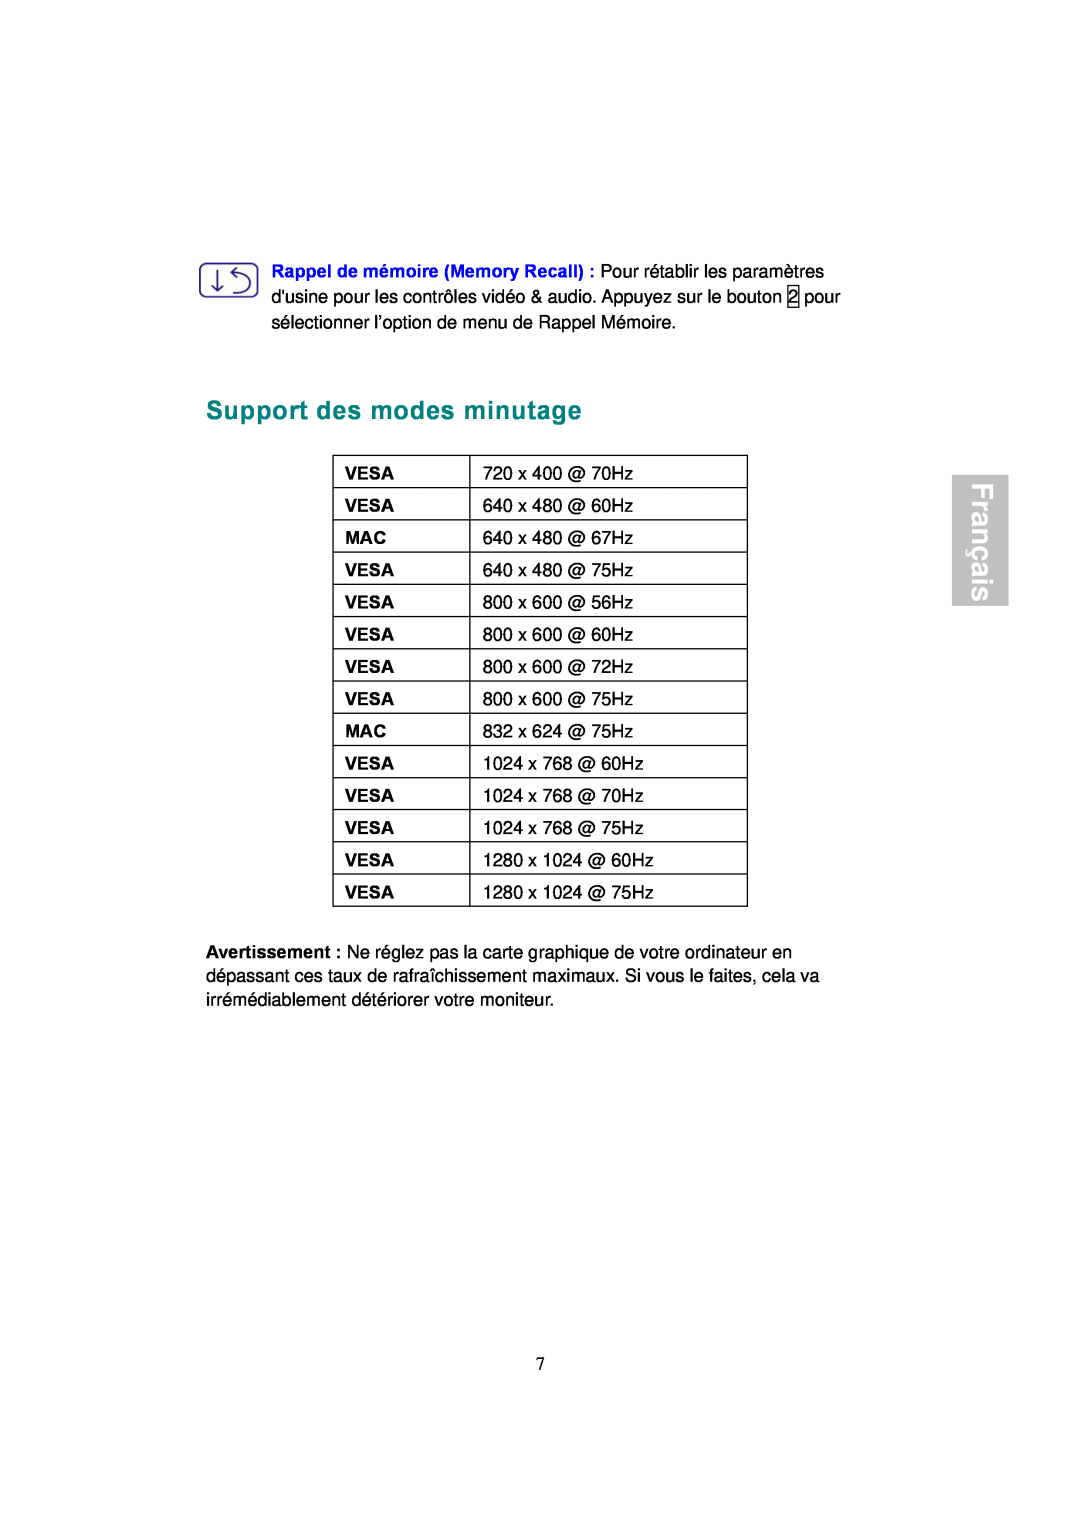 AOC 177S manual Support des modes minutage, Français 